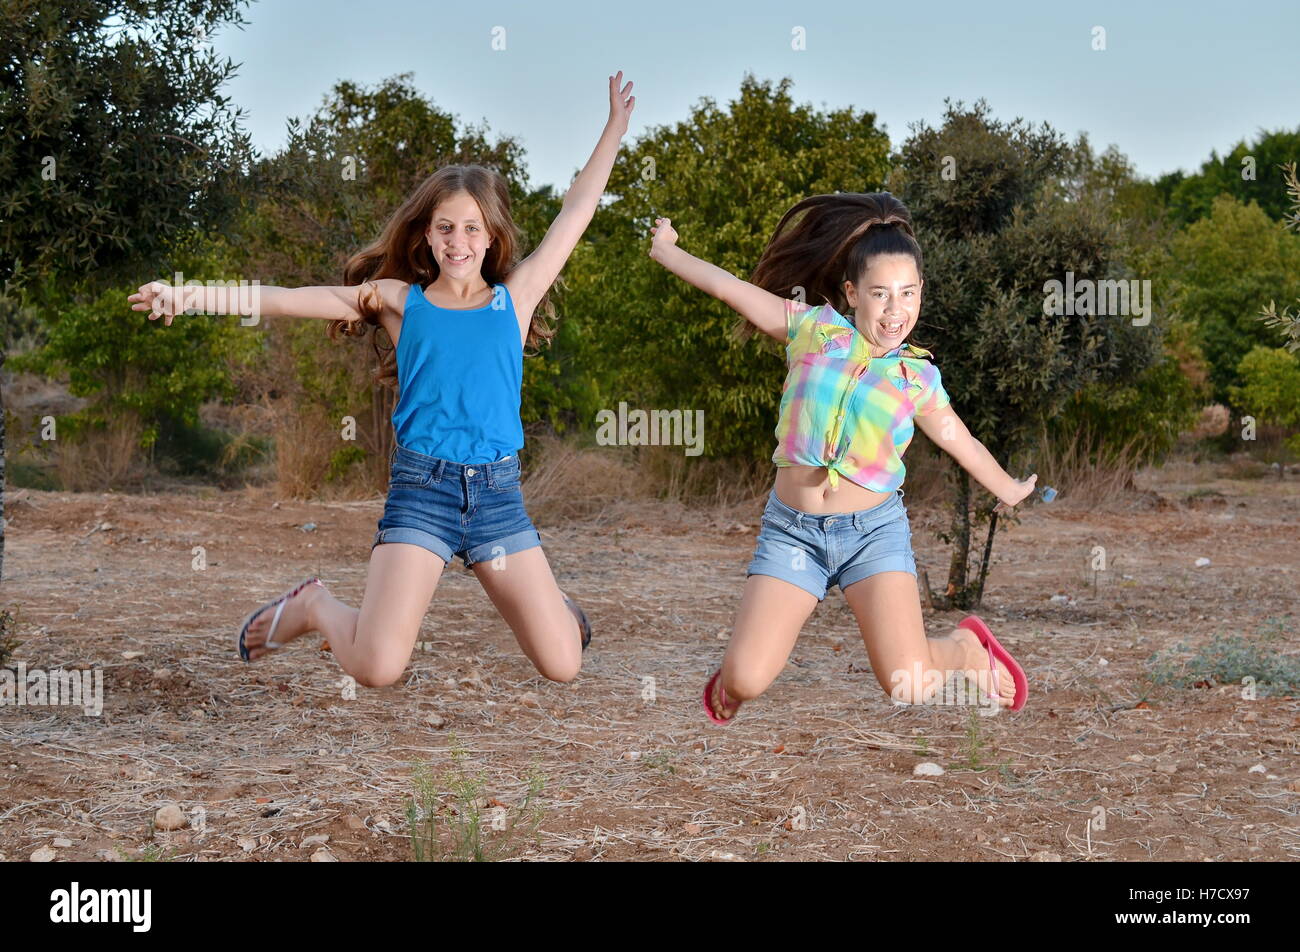 Beste Freunde für immer - zwei 12-jährige Mädchen im Teenageralter springen in der Luft eingefroren Stockfoto